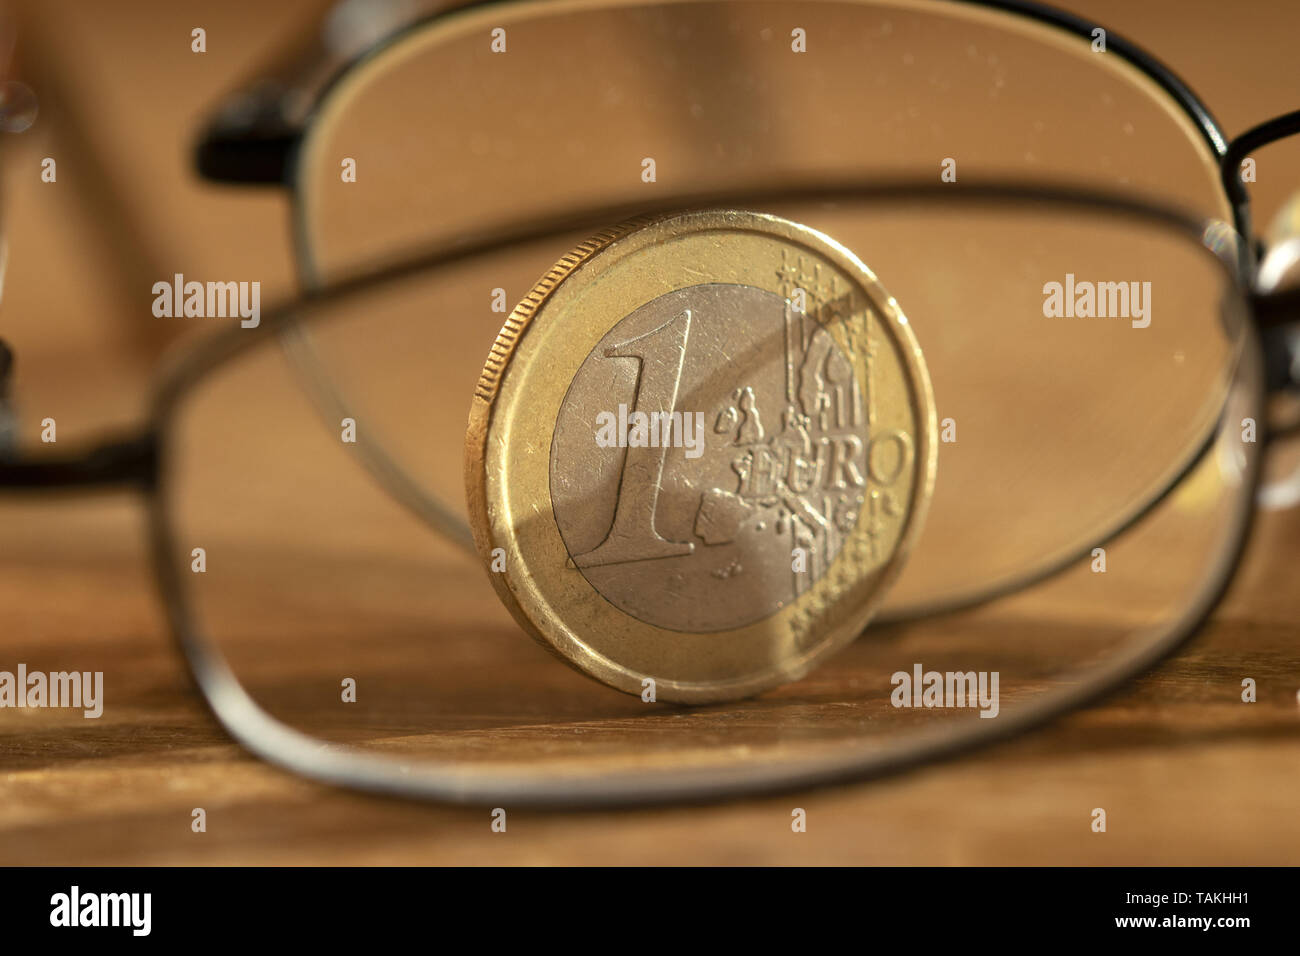 Concetto di risparmio accorta con un euro fotografato attraverso una coppia di specs Foto Stock